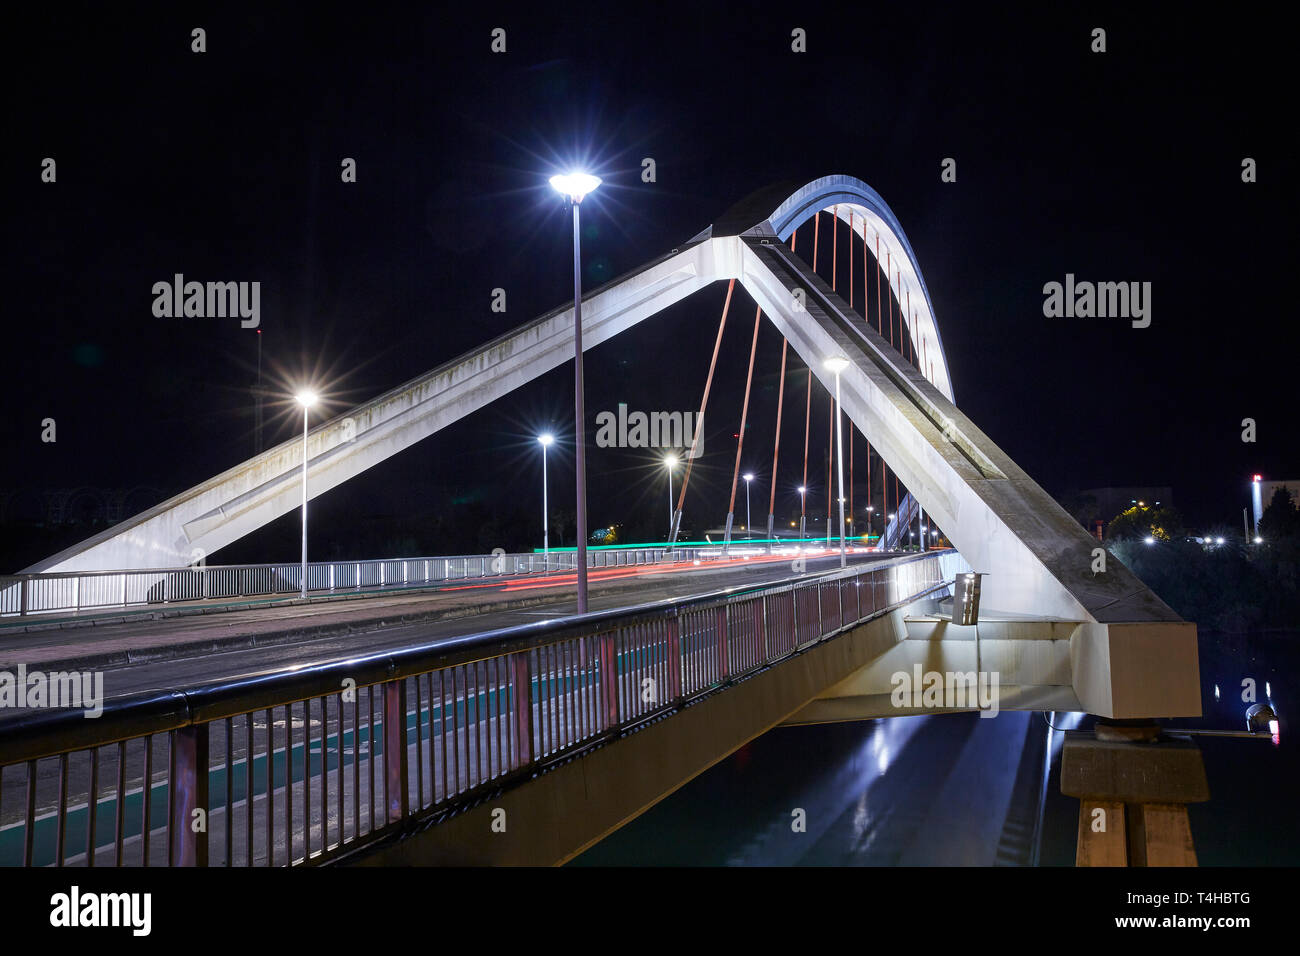 El "Puente de la Barqueta' Puente en Sevilla iluminada por la noche Foto de stock